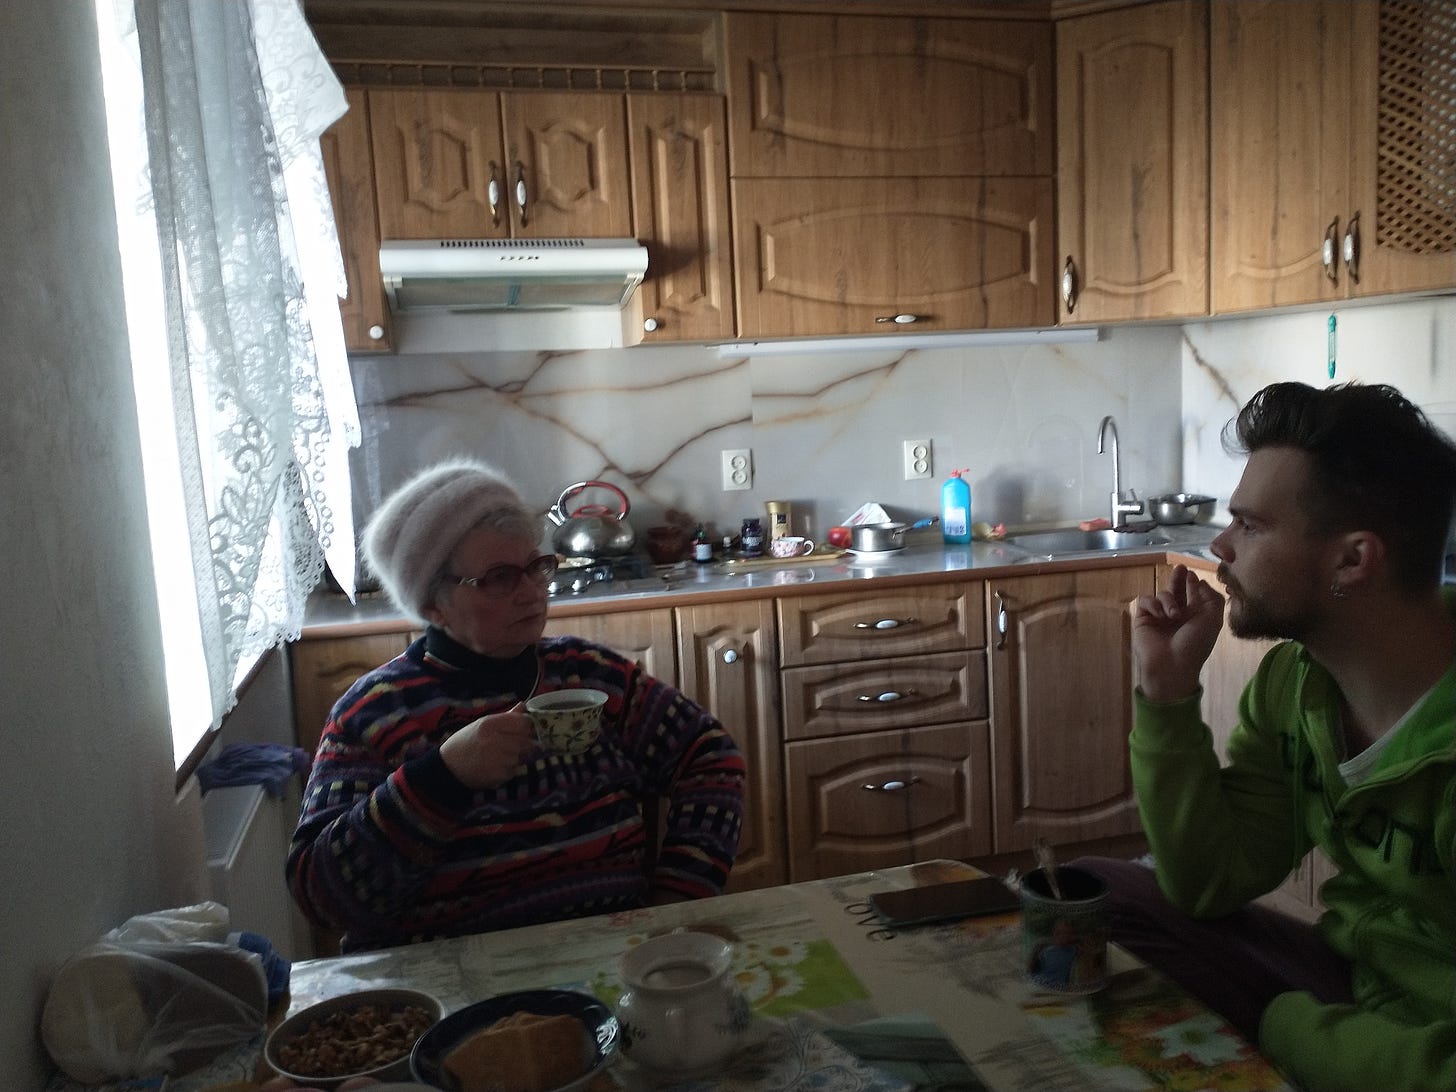 Luda Logachevskaya, Mykolaiv resident and her grandson drink tea in her kitchen and discuss the war